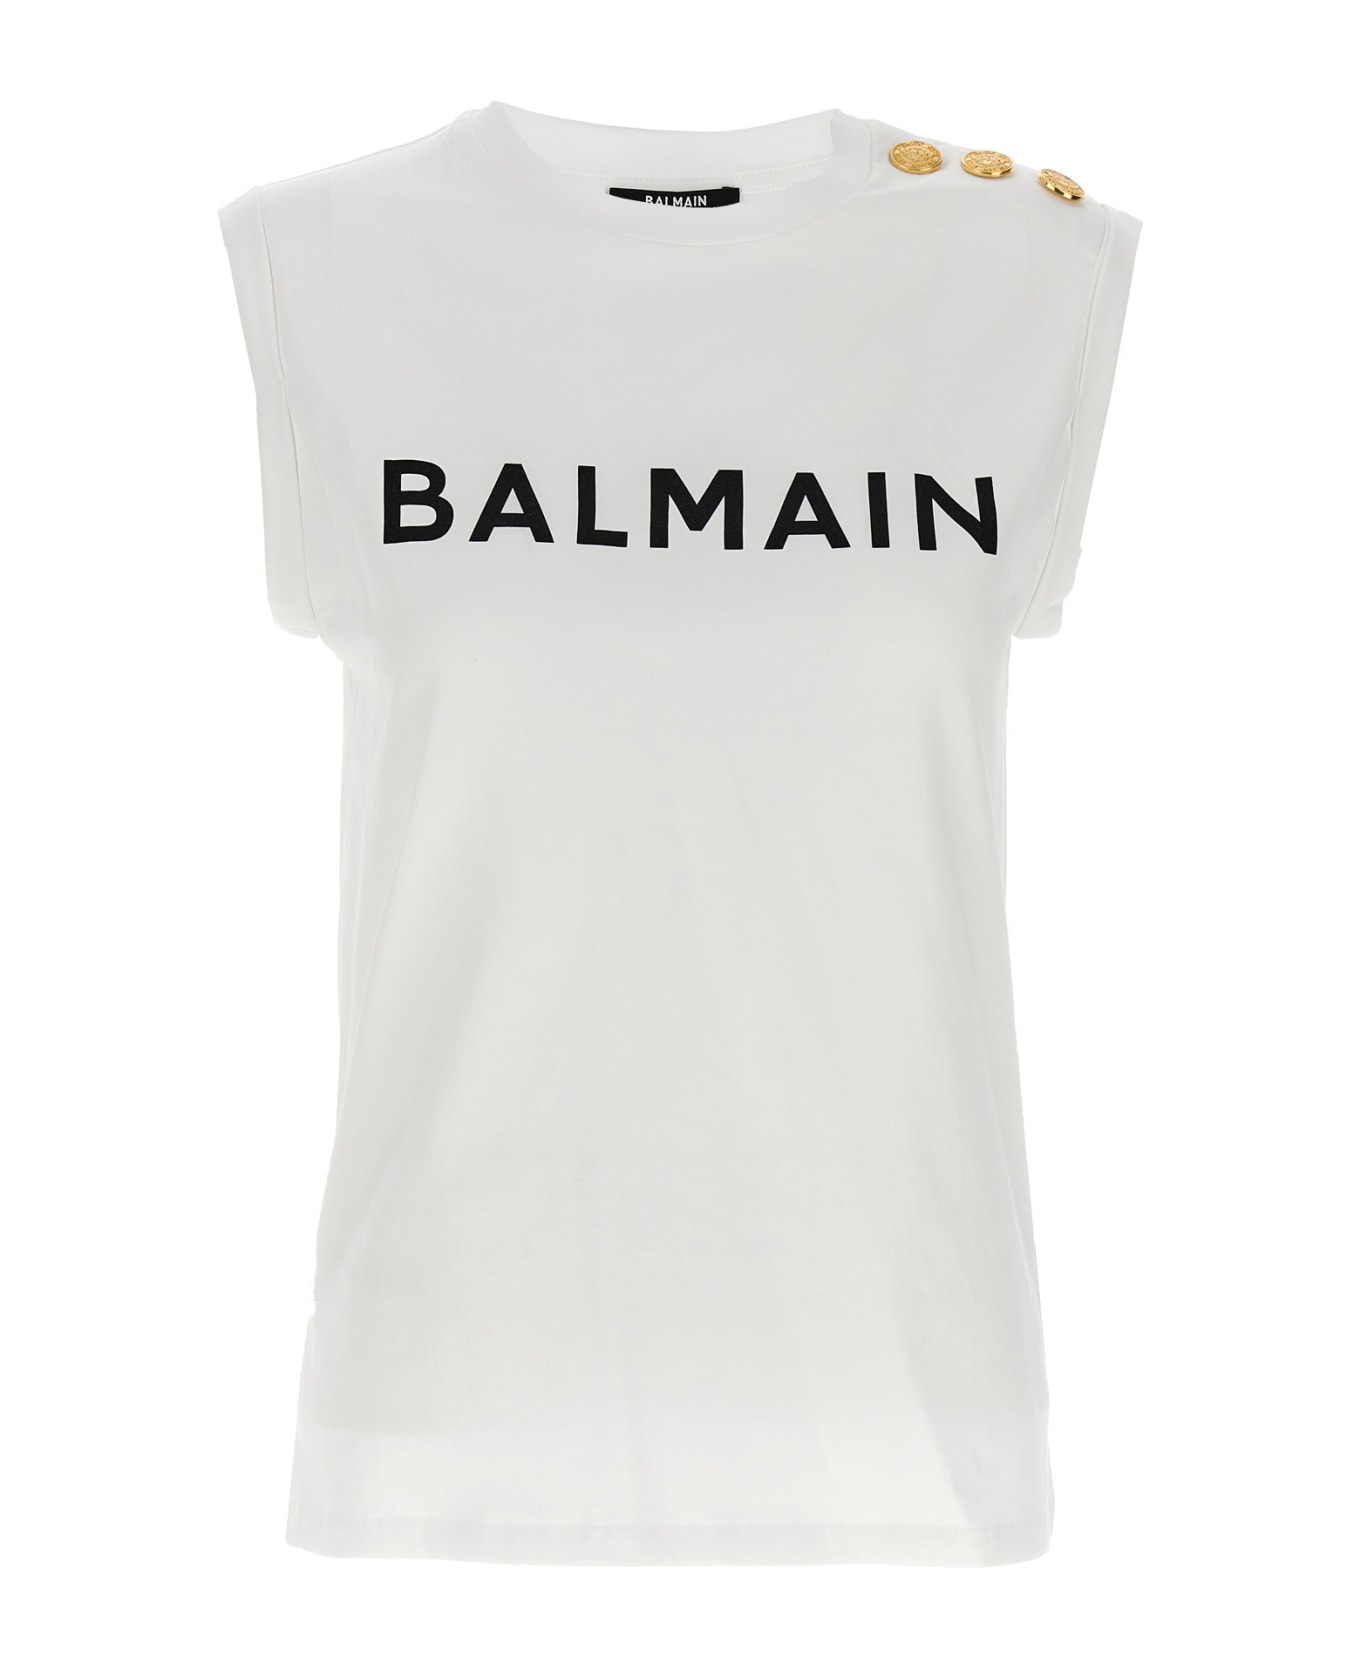 Balmain Logo Print Top - White/Black